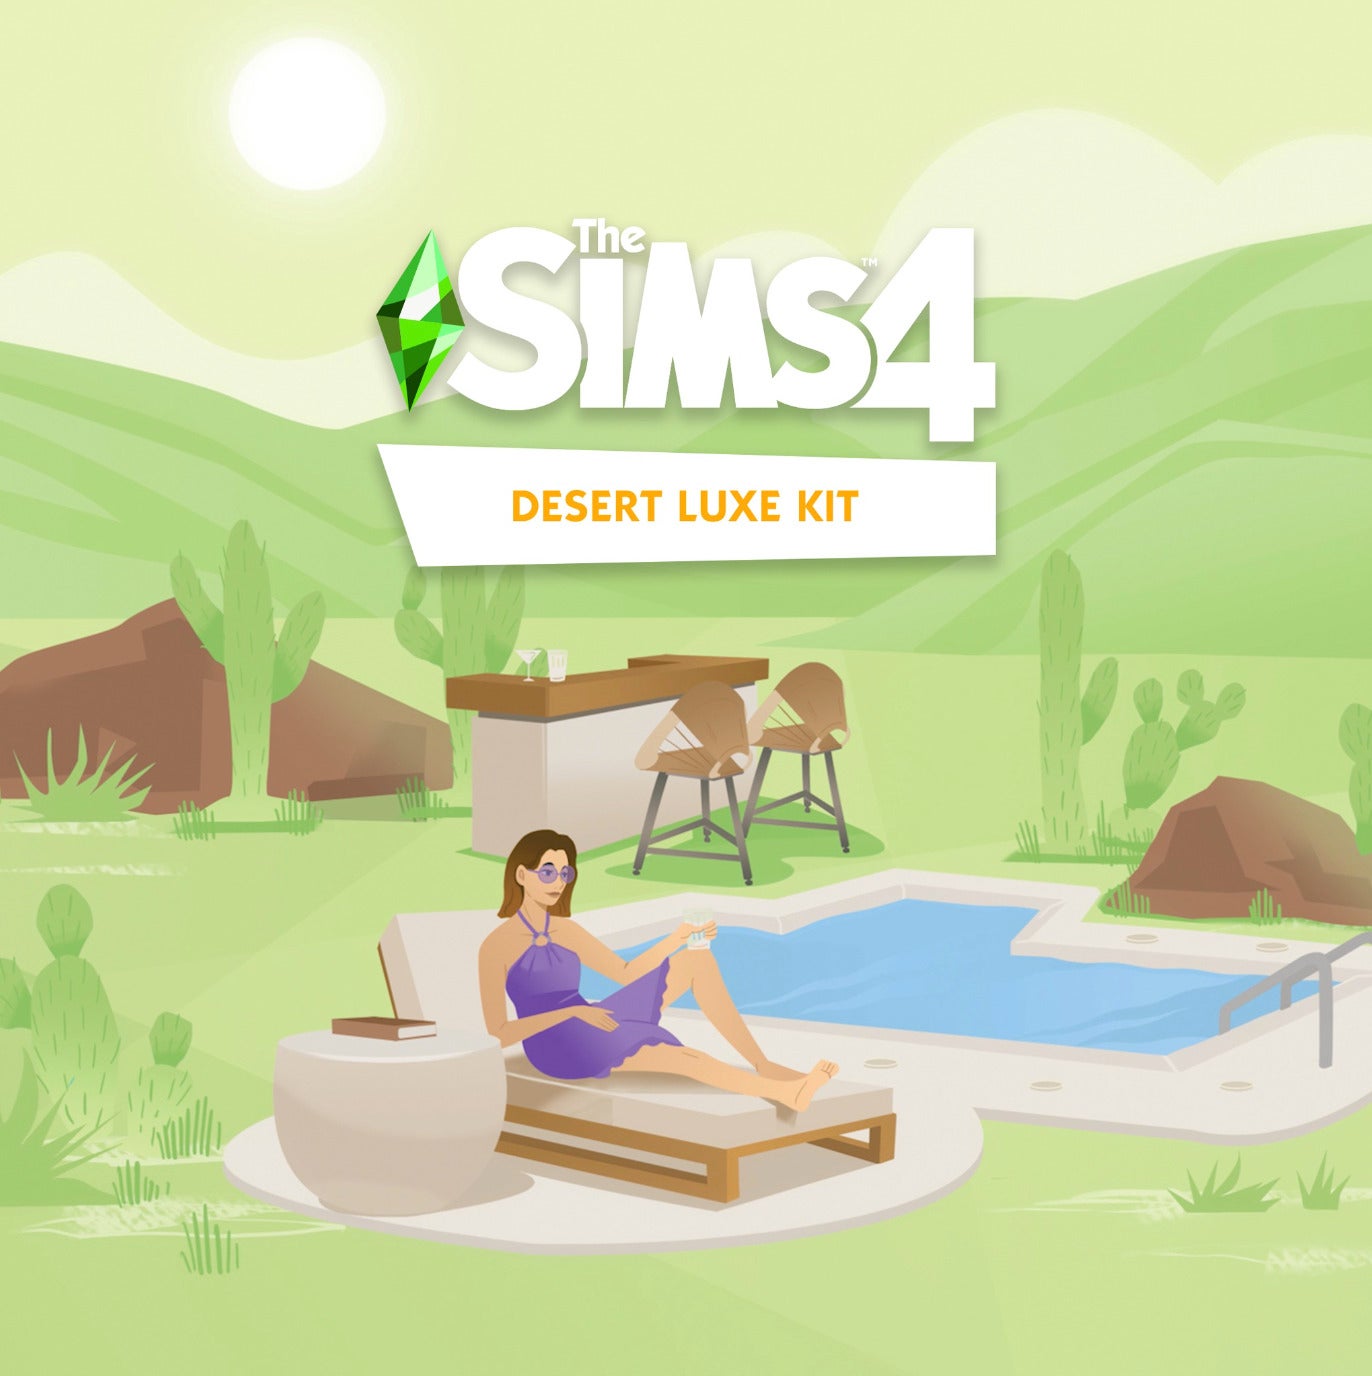 The Sims 4 โหลดฟรี